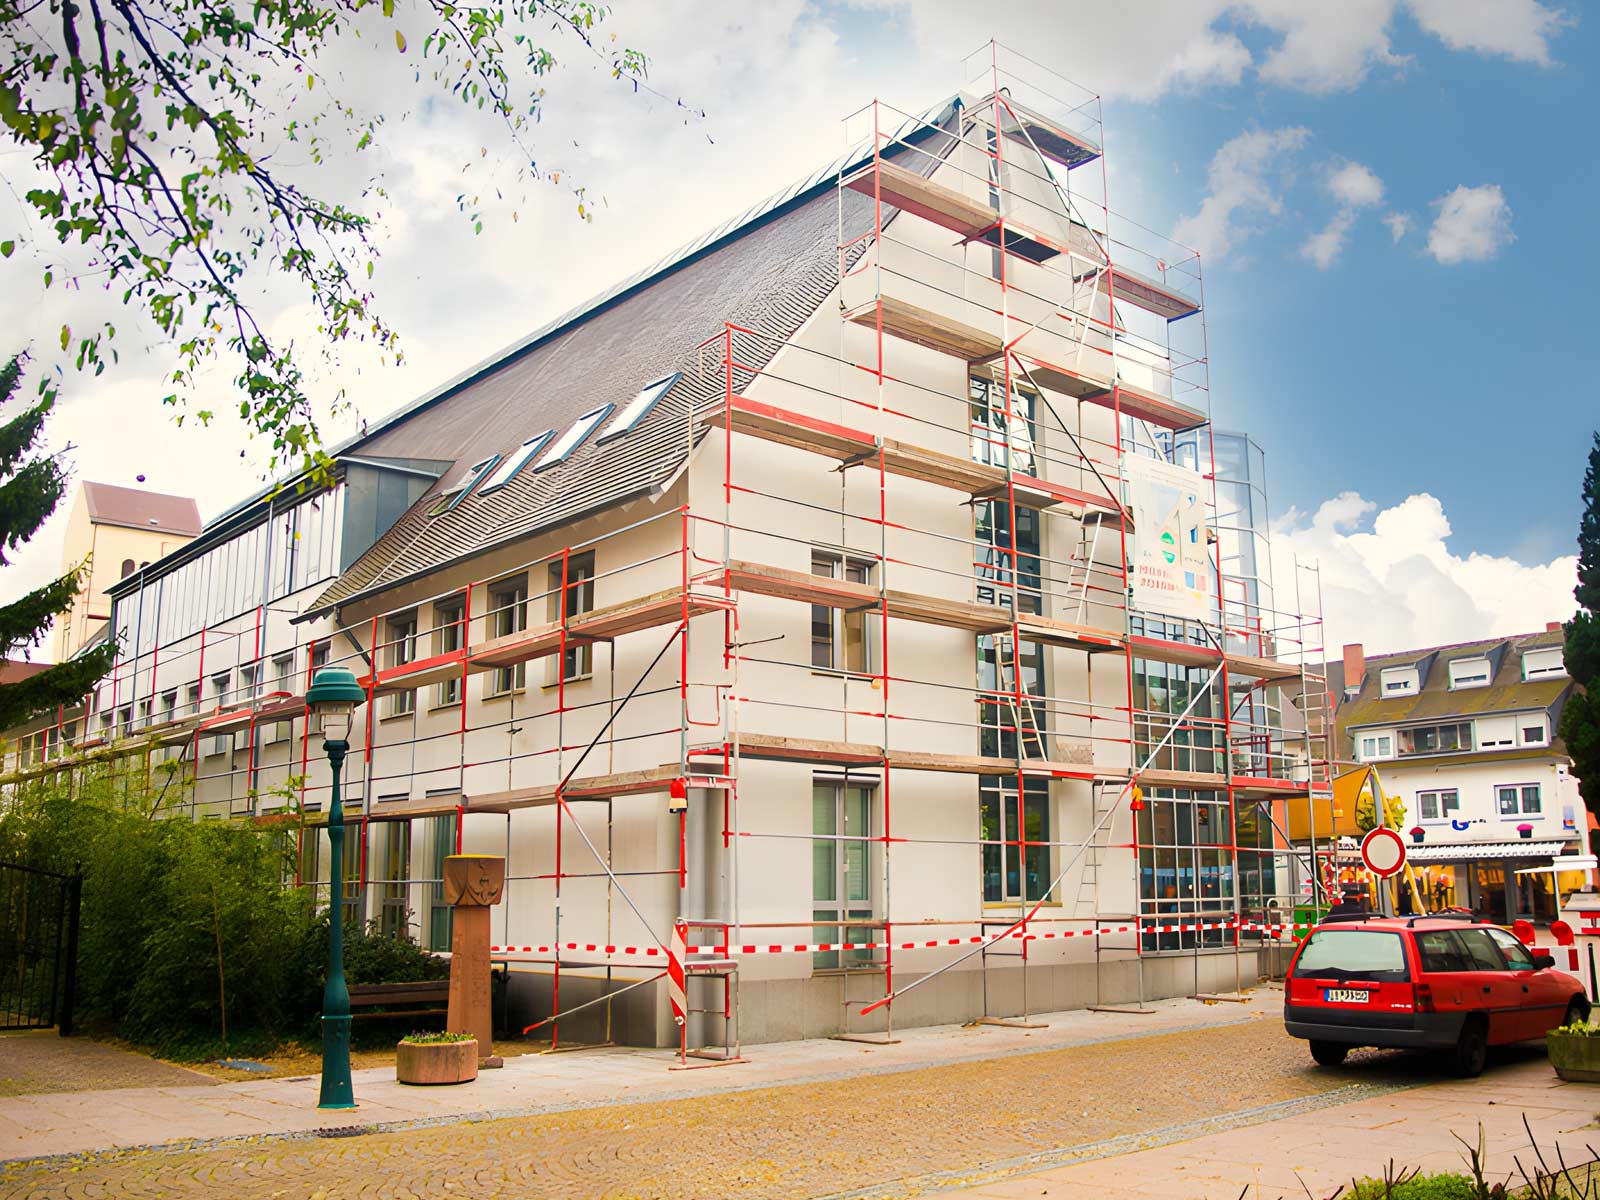 Profilbild der Wild Gerüstbau GmbH in Eimeldingen.